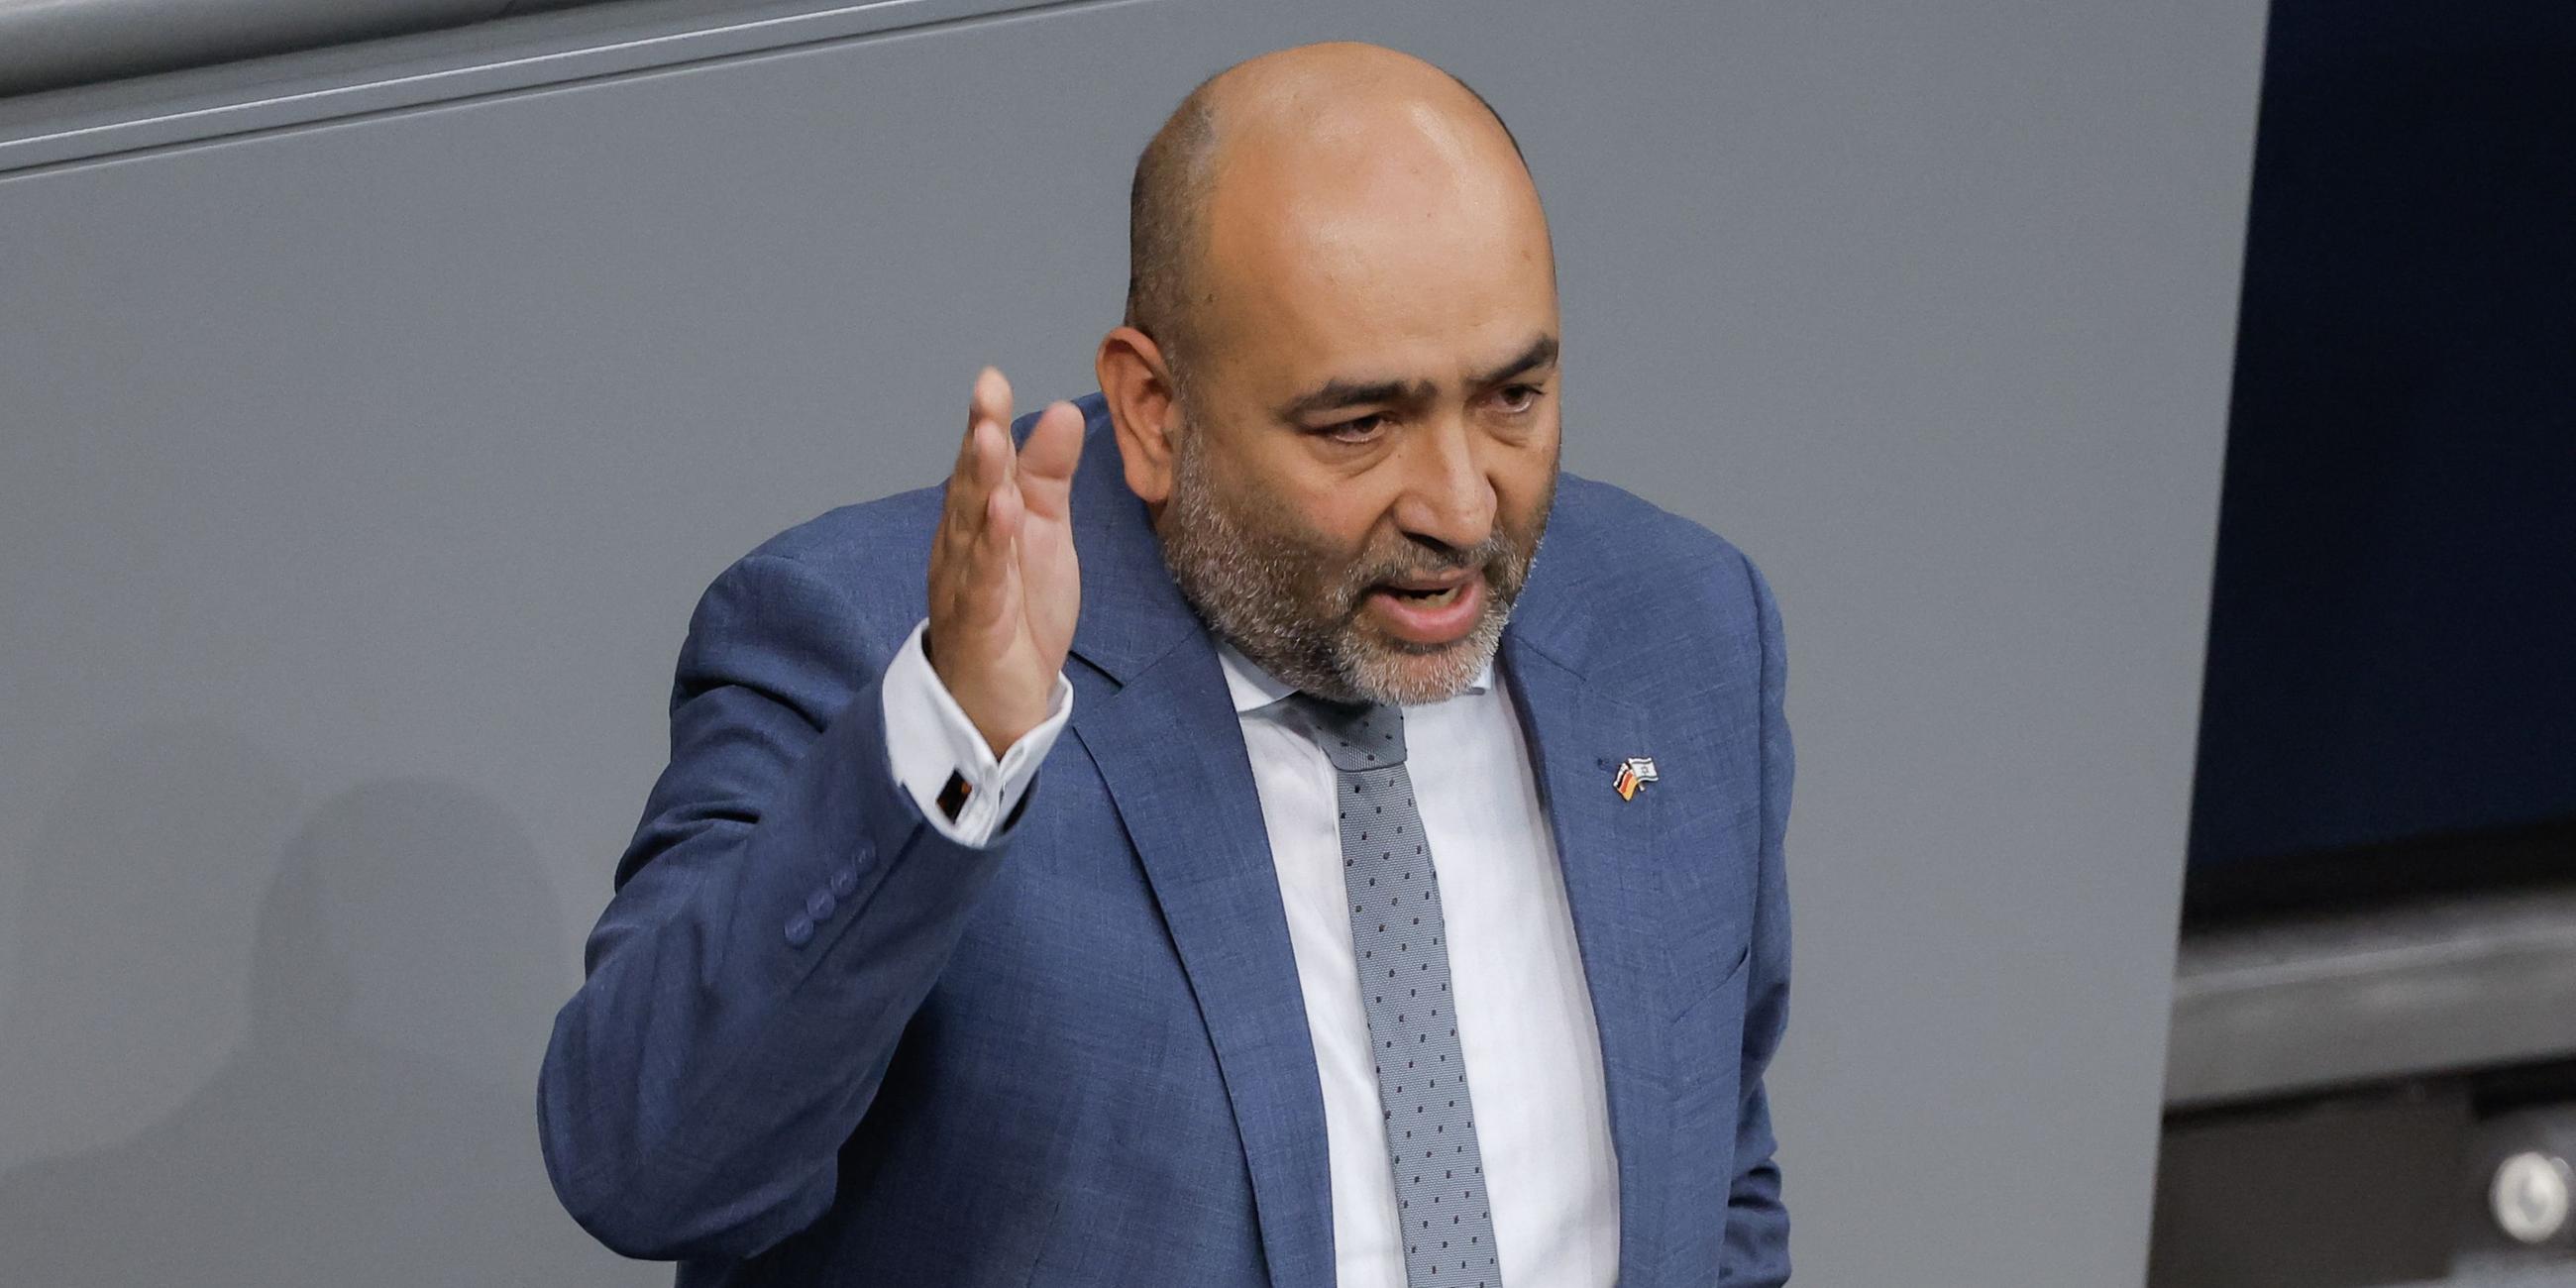 Co-Vorsitzender der deutschen Grünen, Omid Nouripour spricht und gestikuliert mit erhobener Hand an einem Rednerpult im Bundestag.